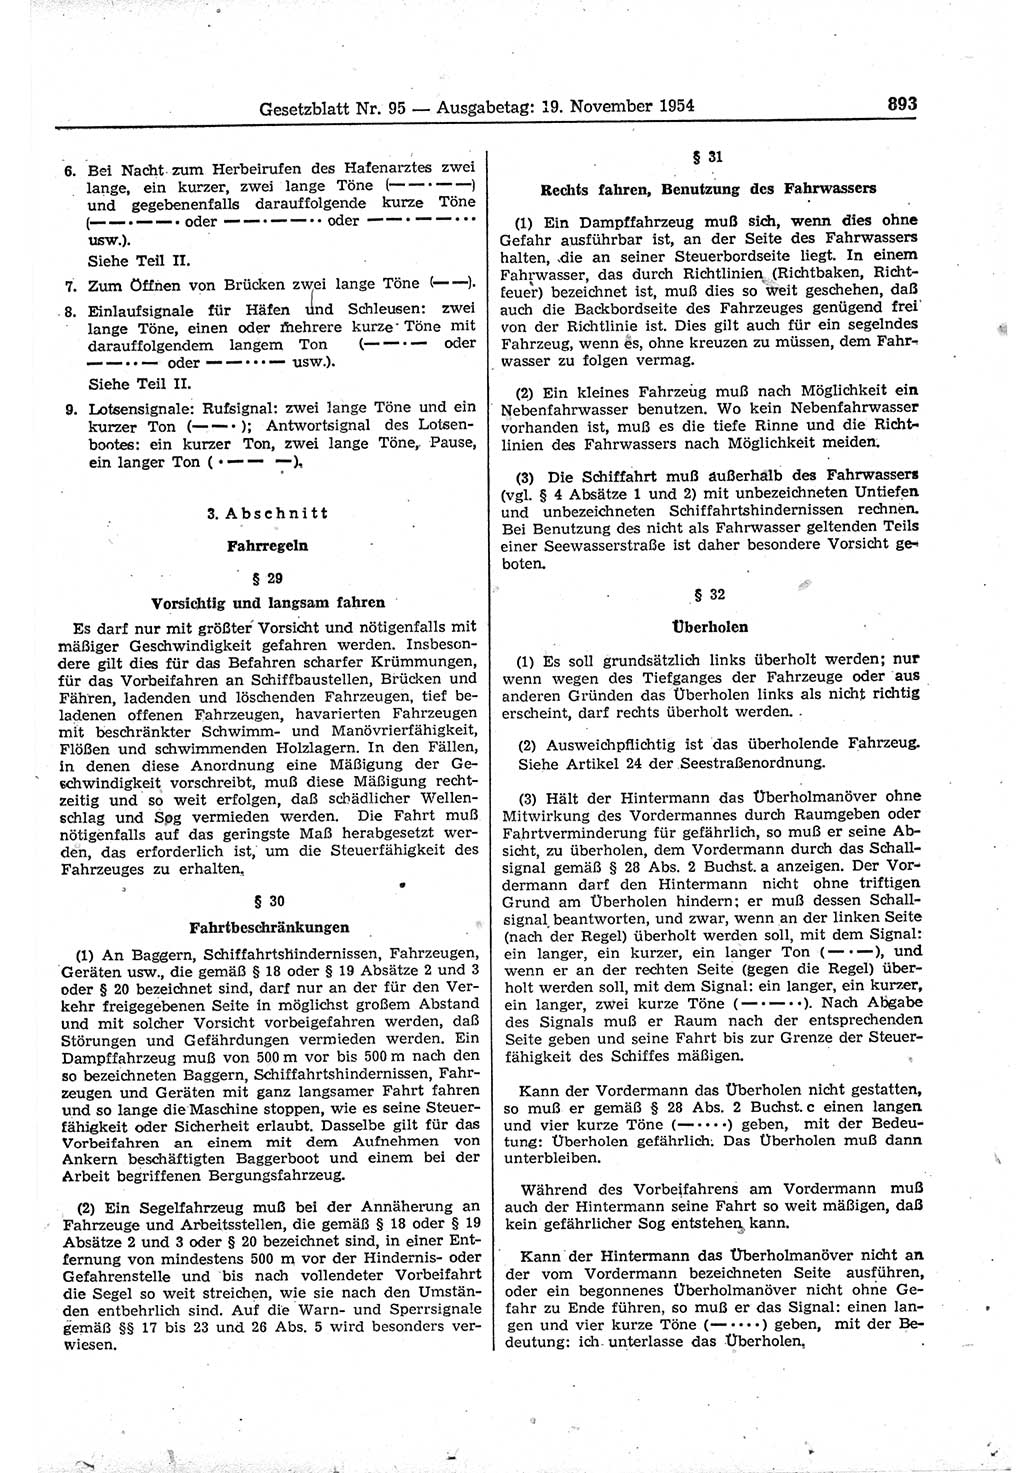 Gesetzblatt (GBl.) der Deutschen Demokratischen Republik (DDR) 1954, Seite 893 (GBl. DDR 1954, S. 893)